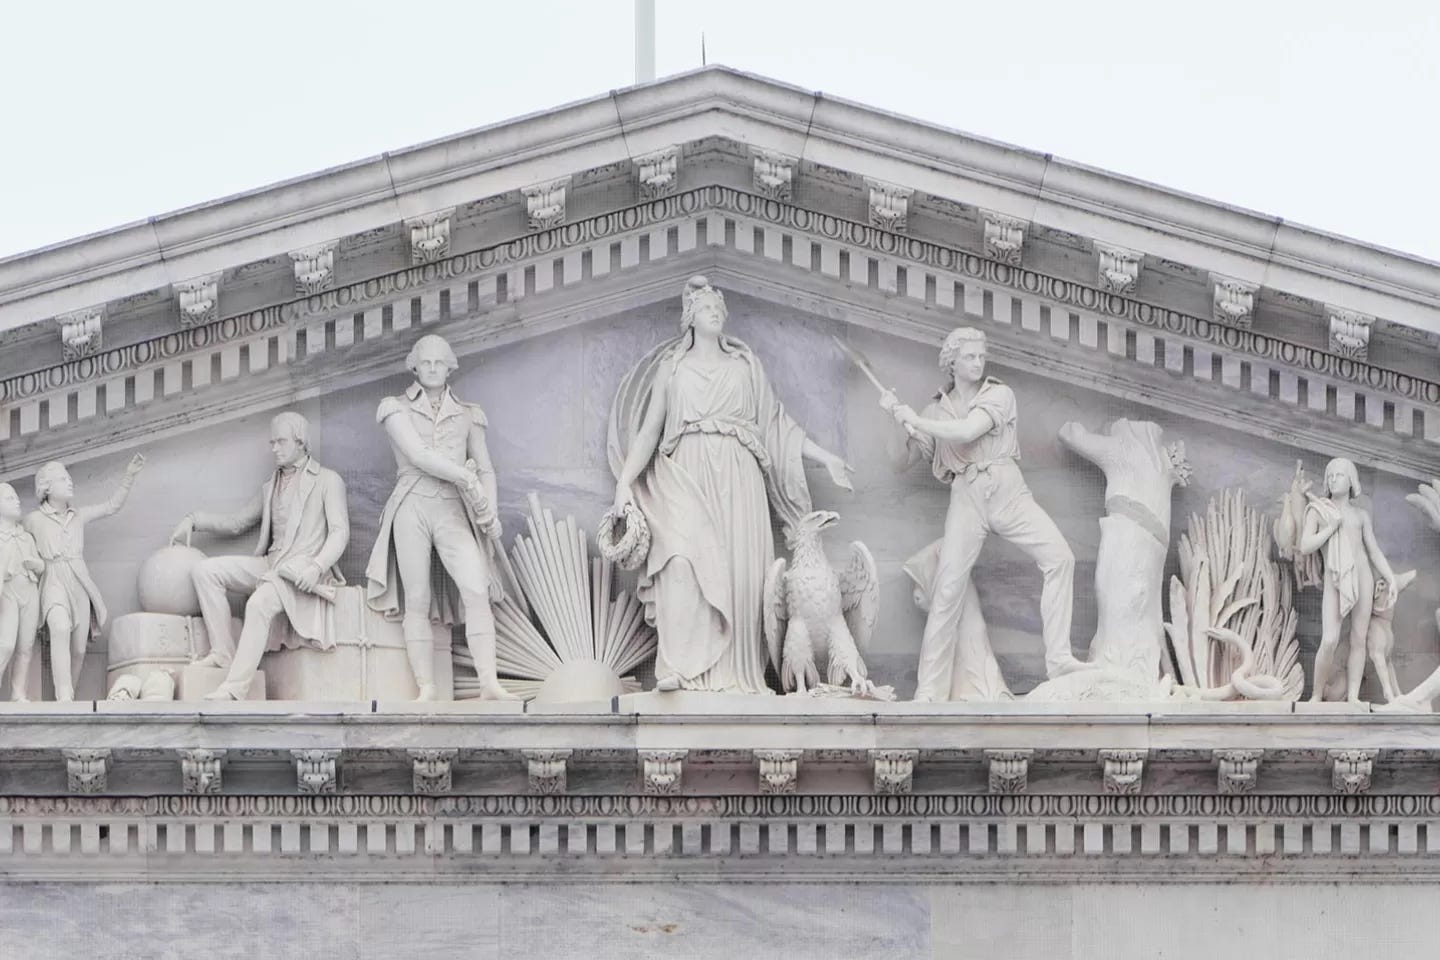 Progress of Civilization Pediment | Architect of the Capitol